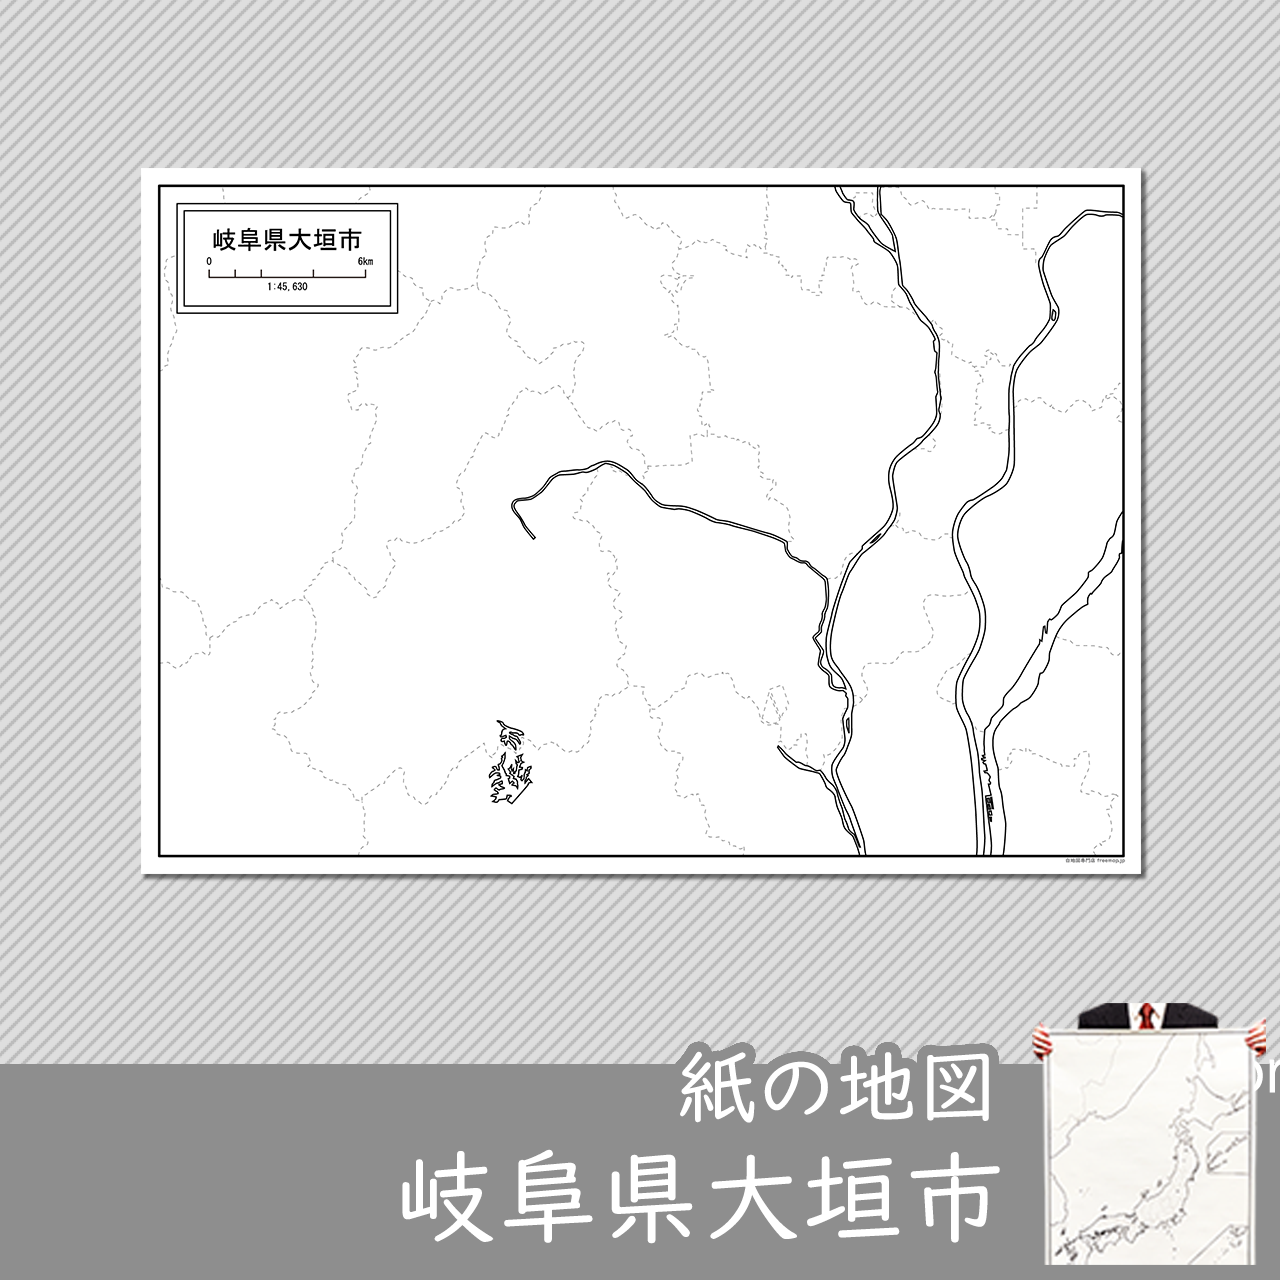 大垣市の紙の白地図のサムネイル